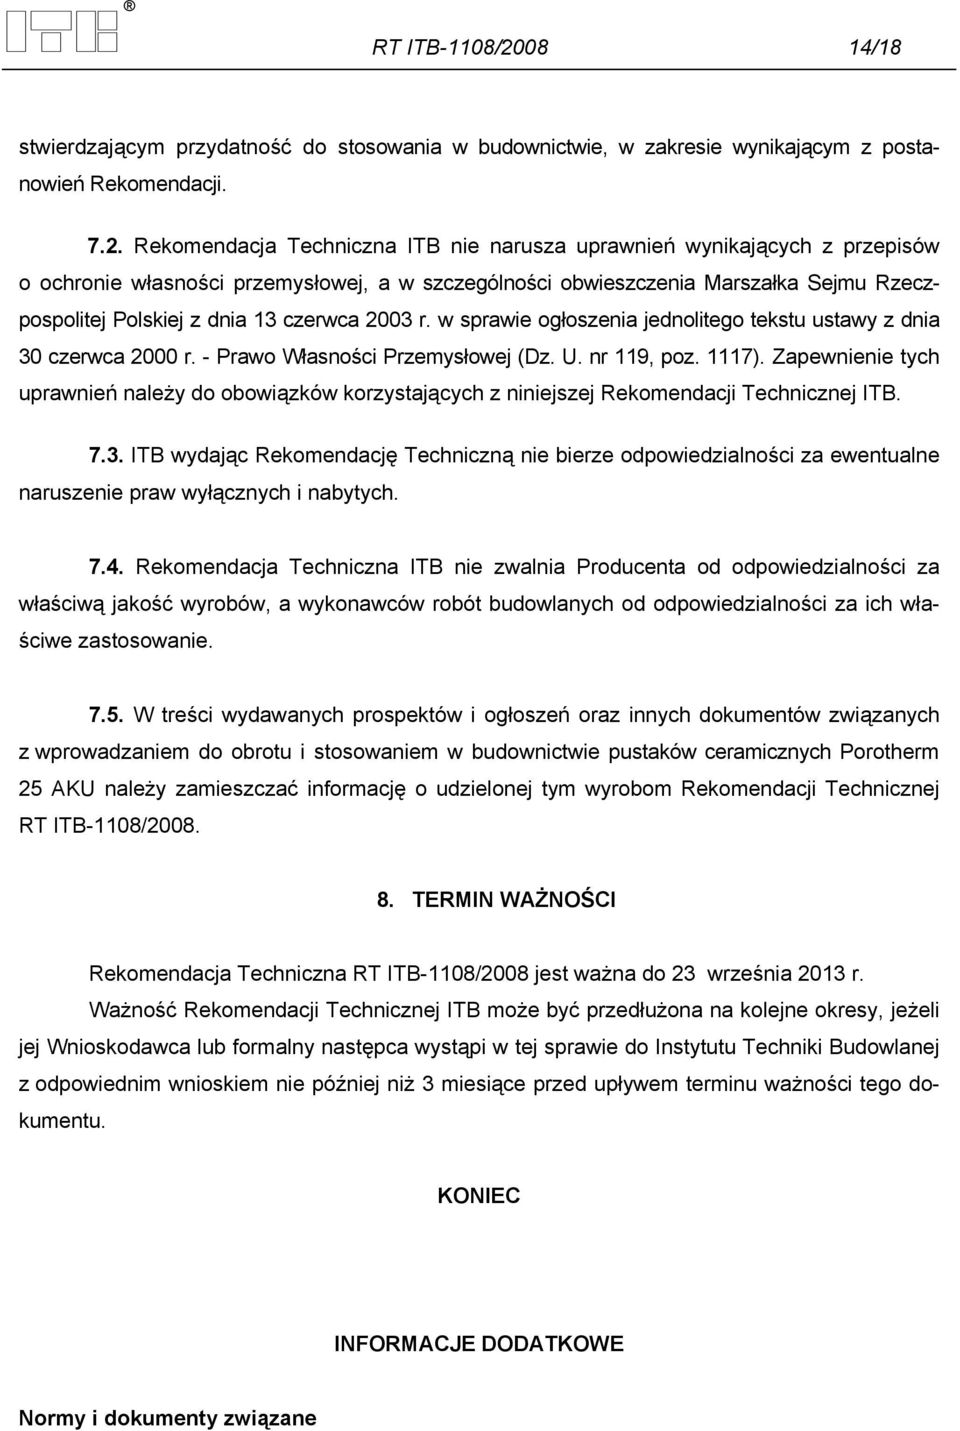 Rekomendacja Techniczna ITB nie narusza uprawnień wynikających z przepisów o ochronie własności przemysłowej, a w szczególności obwieszczenia Marszałka Sejmu Rzeczpospolitej Polskiej z dnia 13